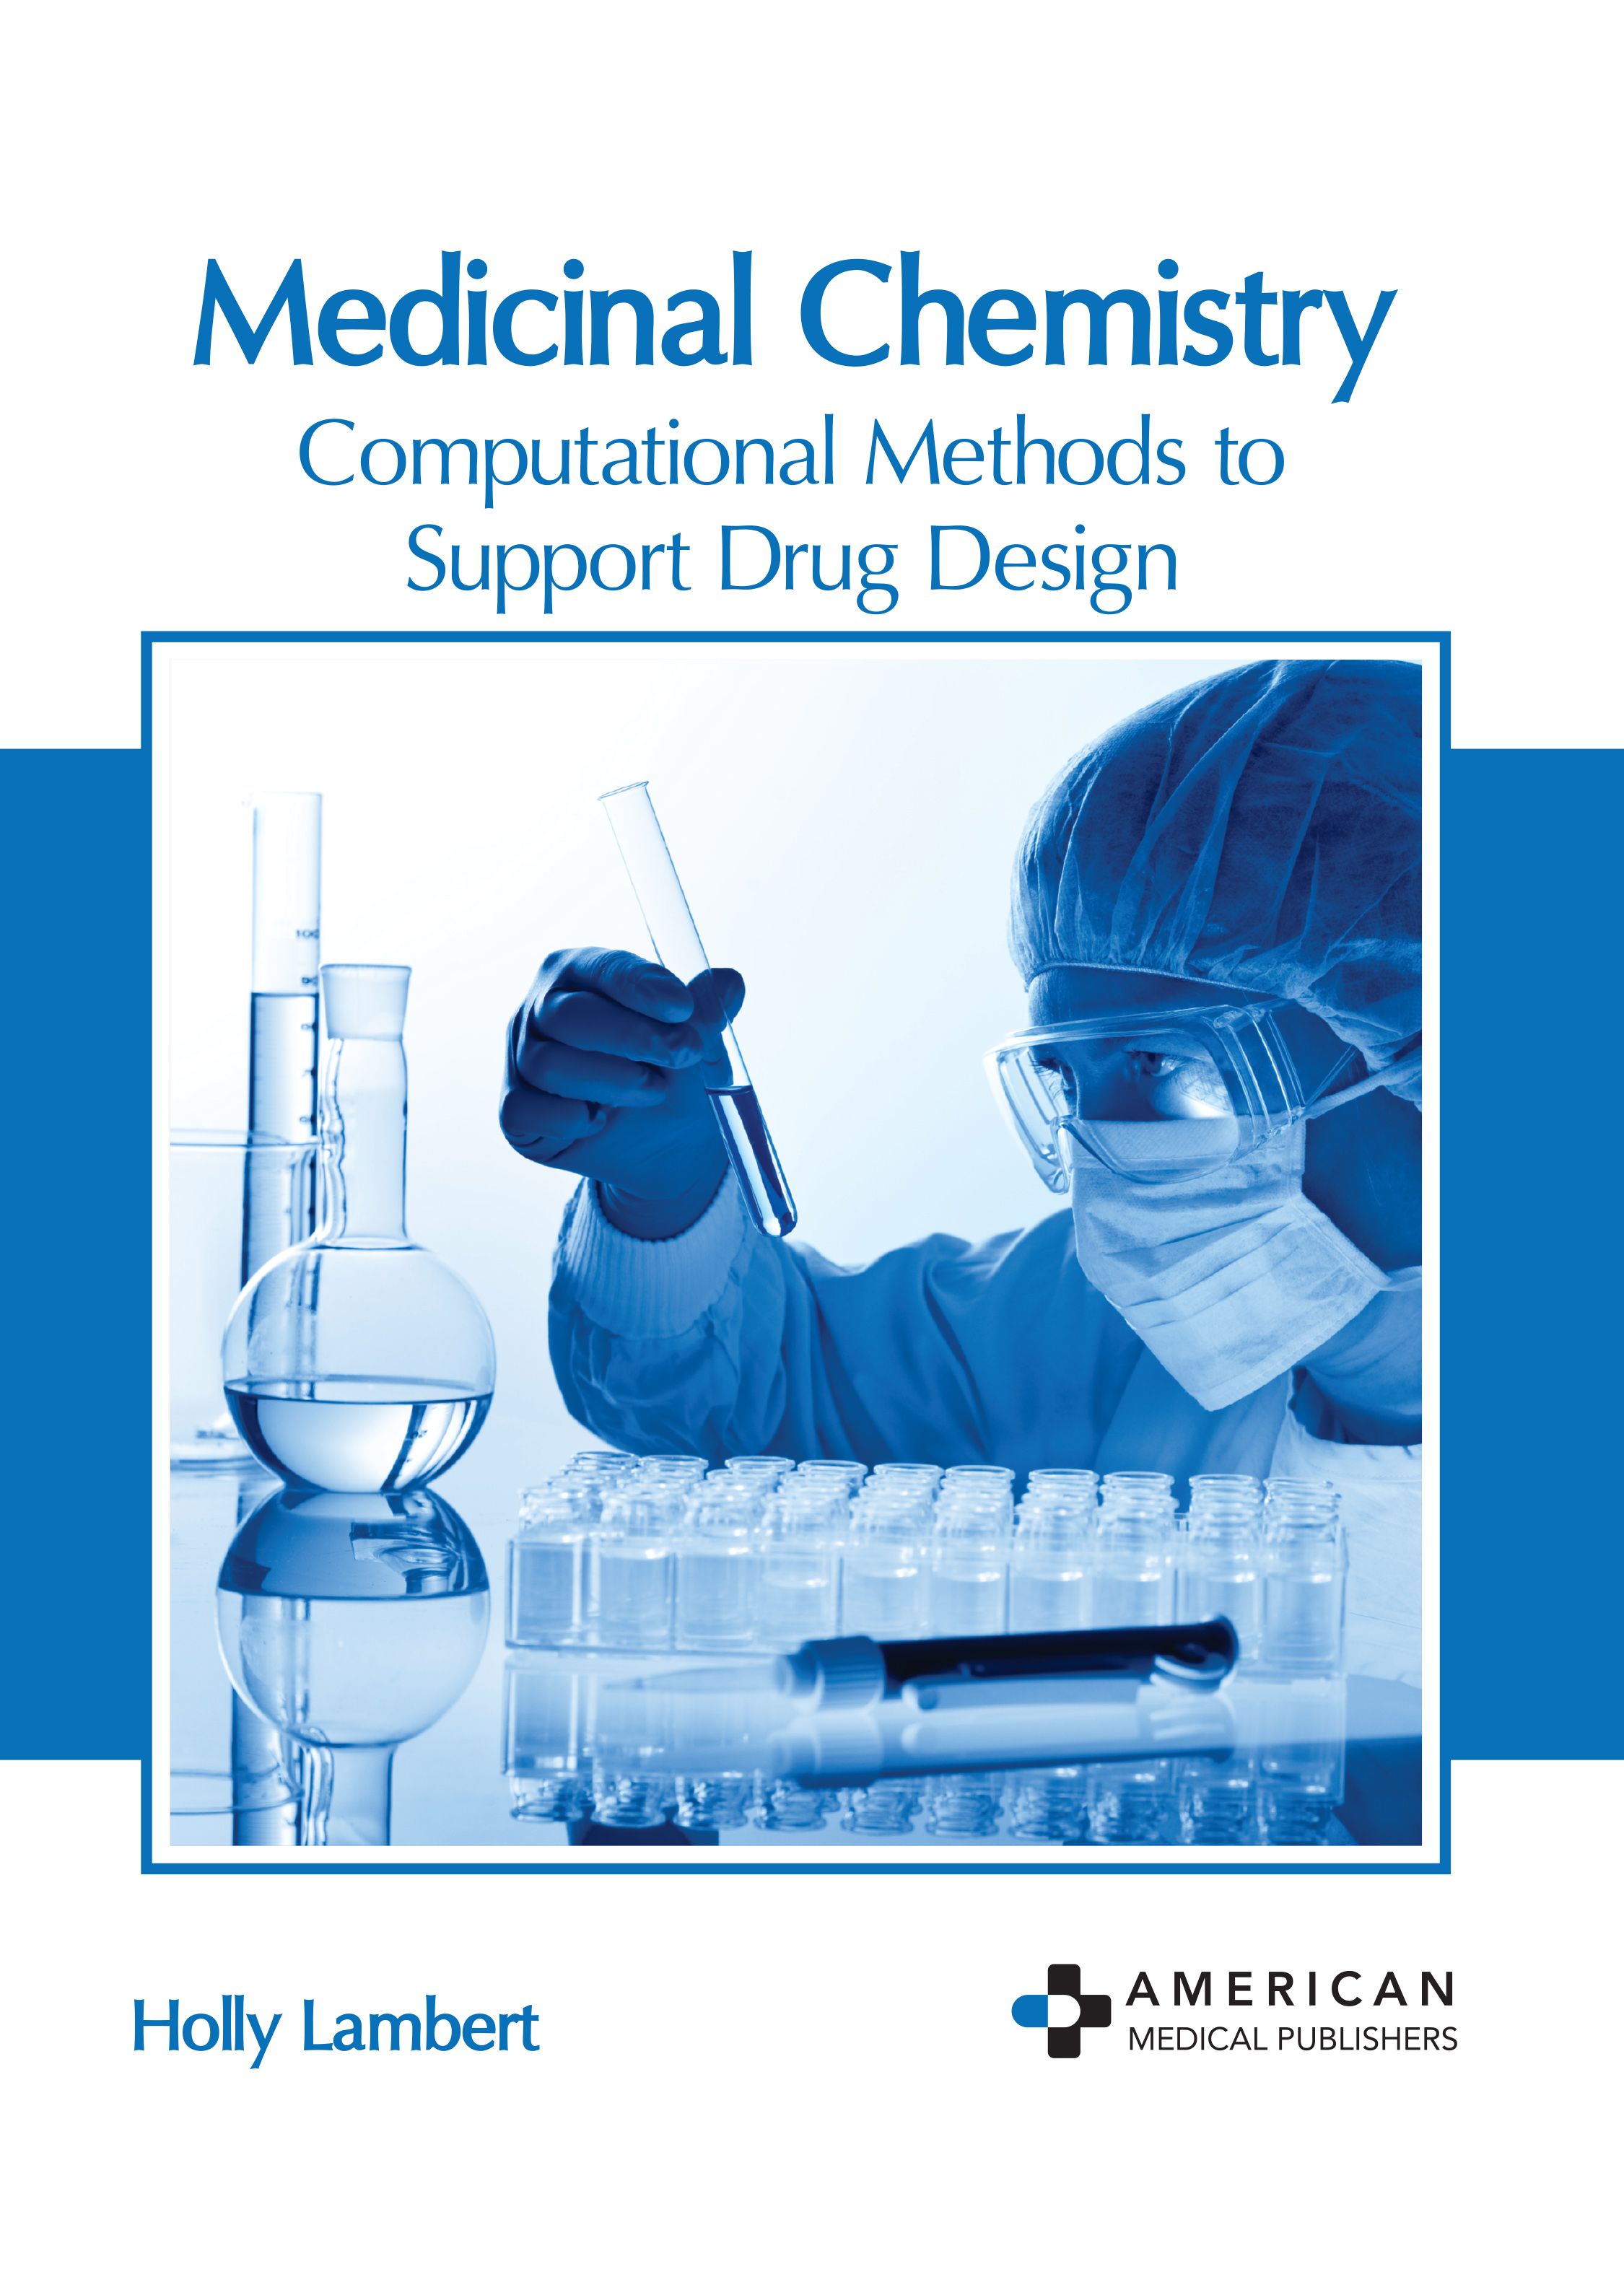 MEDICINAL CHEMISTRY: COMPUTATIONAL METHODS TO SUPPORT DRUG DESIGN